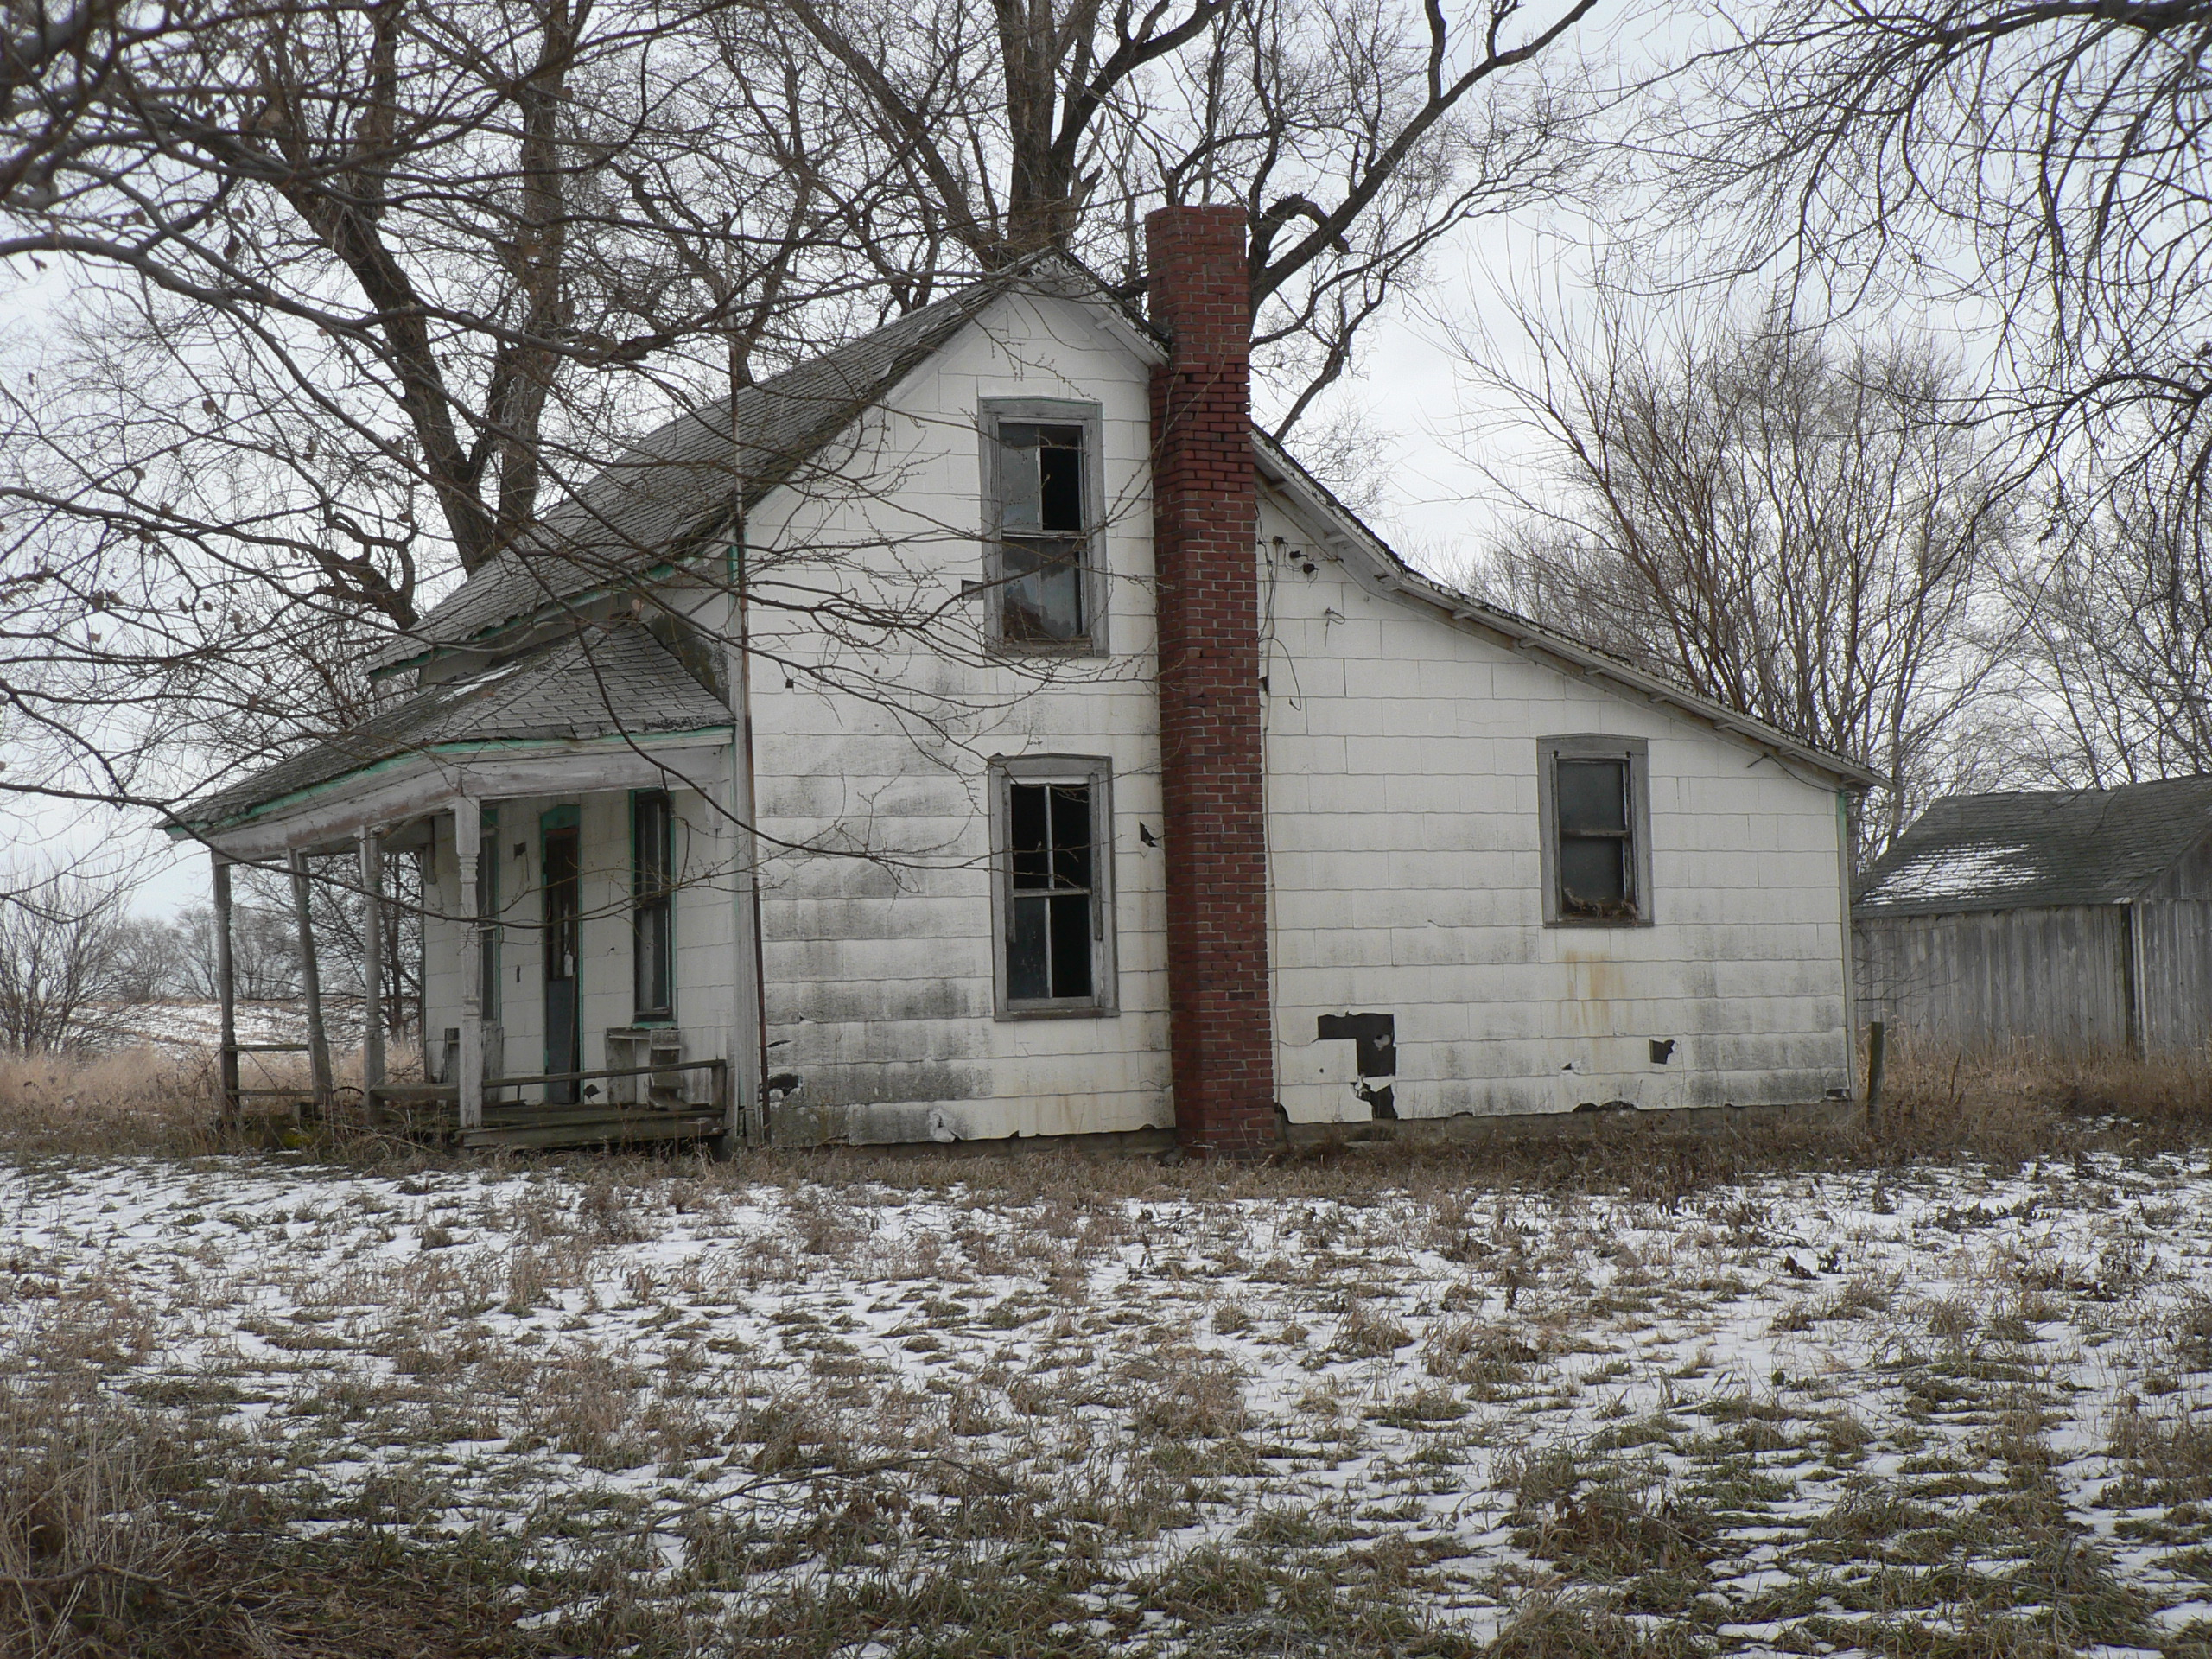 An old farm house